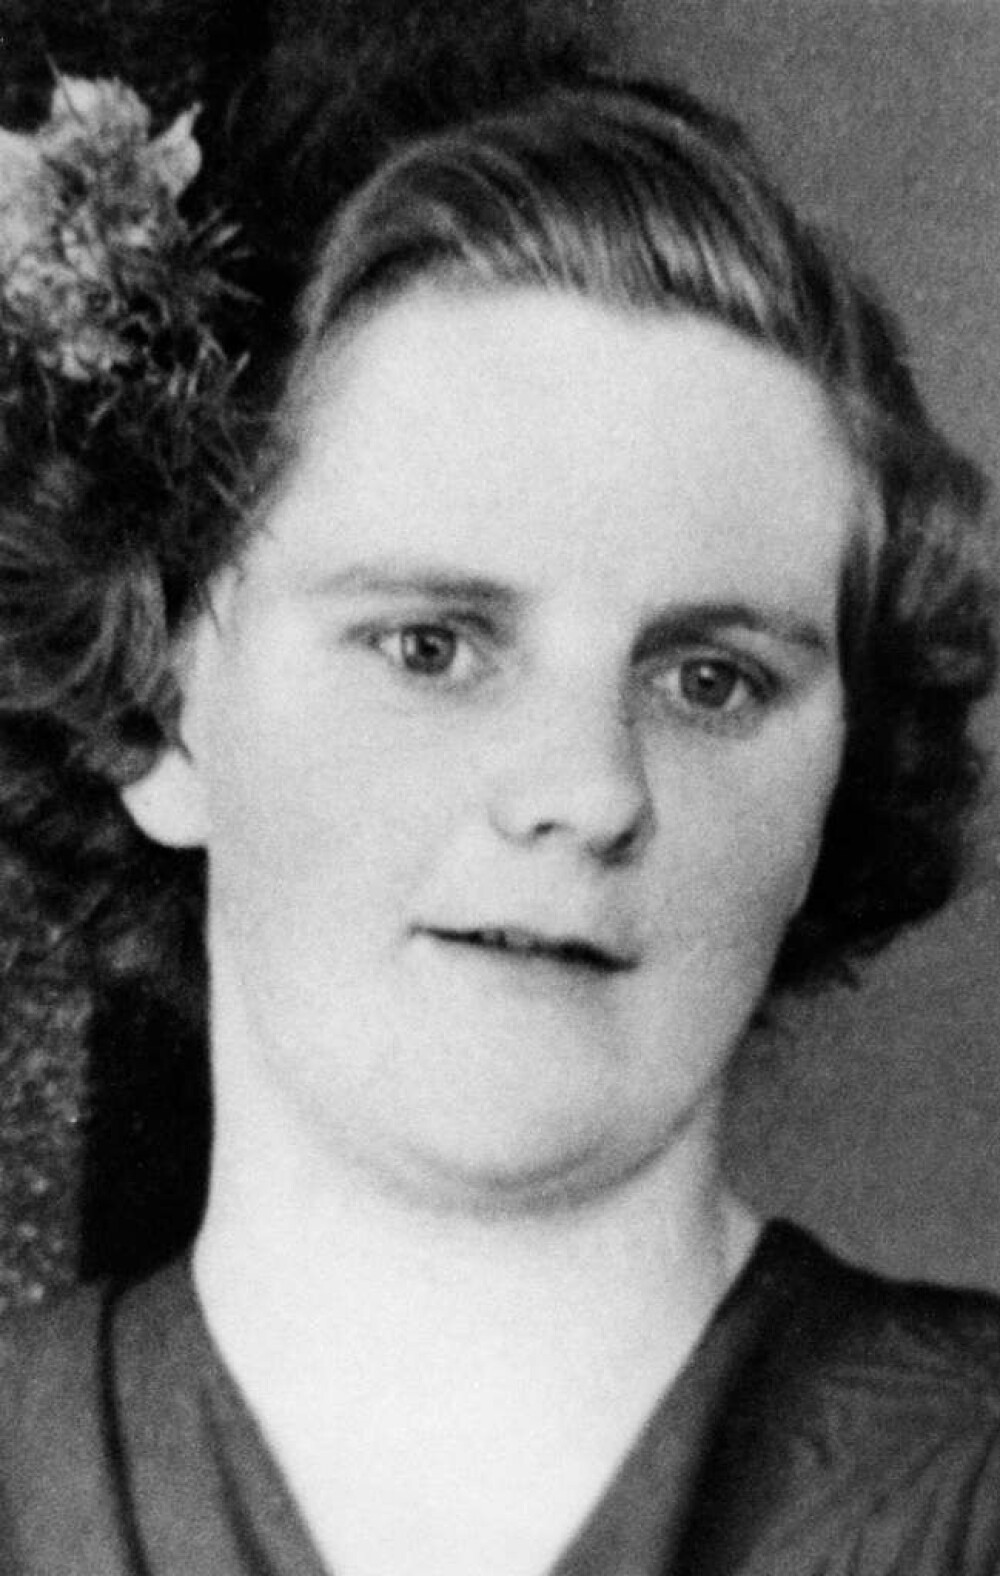 <b><SPAN CLASS=BOLD>TREDJE OFFER:</b></span> Rut Lind, myrdet etter at hun forlot Örebros sykehus 26. mai 1959. Funnet død i et buskas en måned senere.